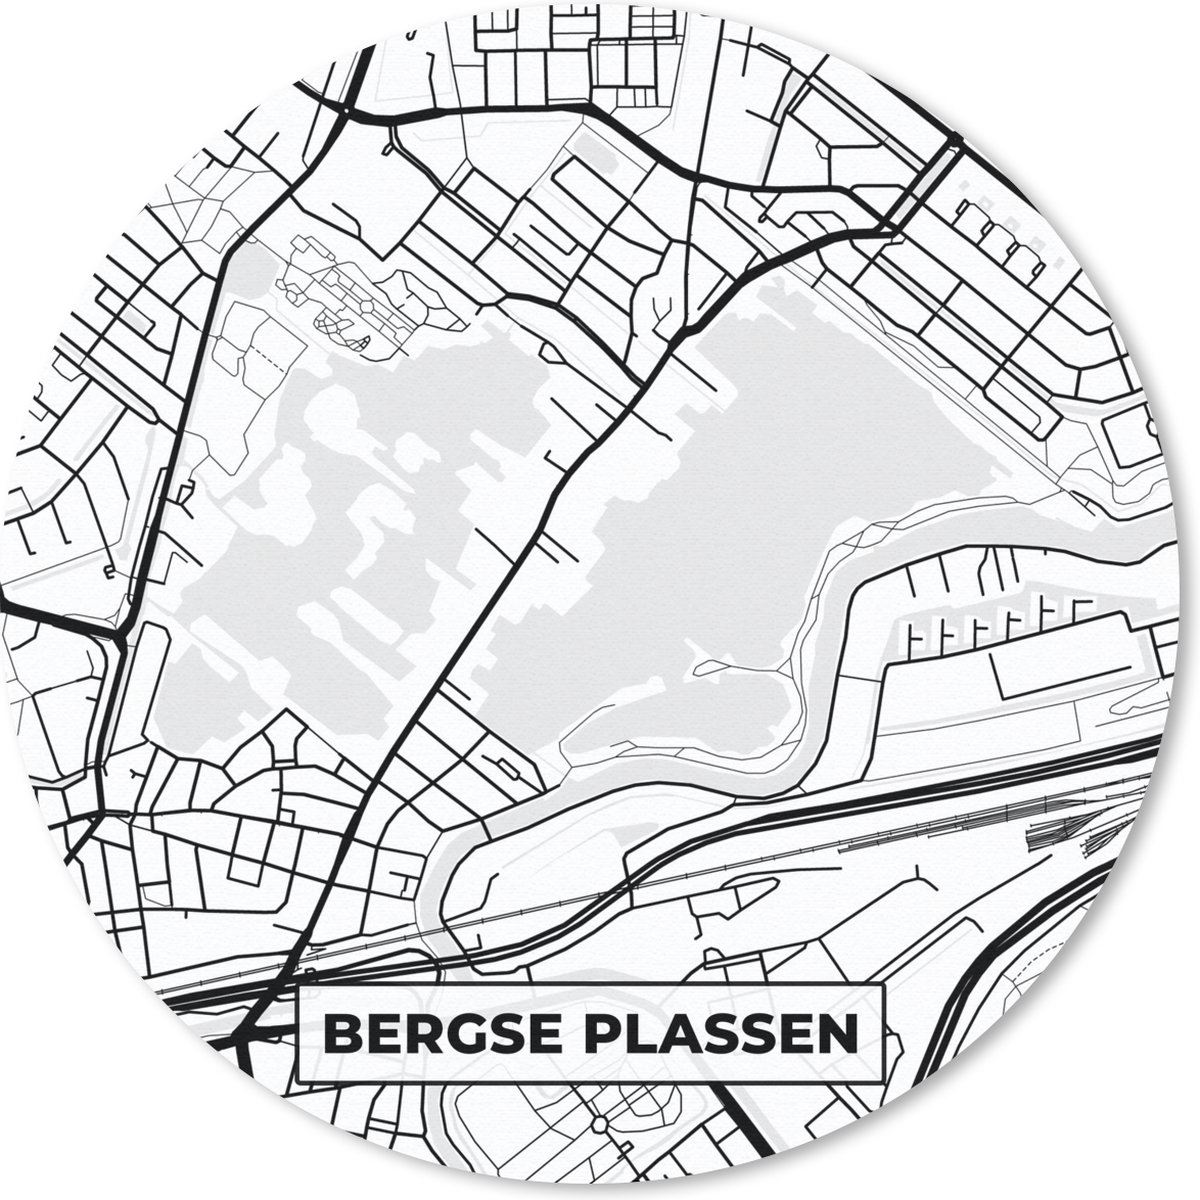 Muismat - Mousepad - Rond - Plattegrond - Nederland - Bergse Plassen - Kaart - Stadskaart - 30x30 cm - Ronde muismat